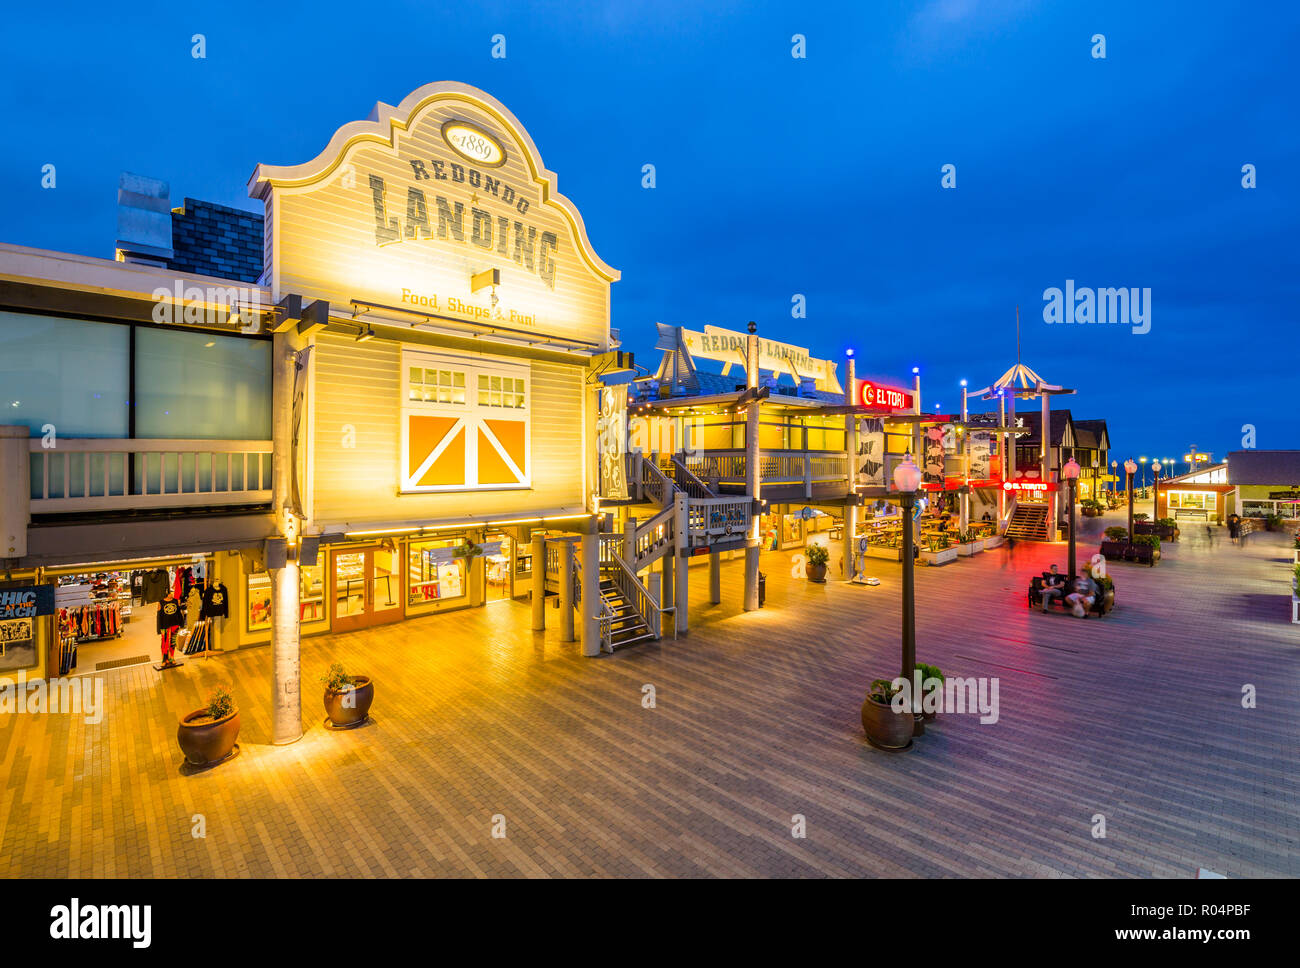 Vista de la playa Redondo Pier al anochecer, Los Angeles, California, Estados Unidos de América, América del Norte Foto de stock